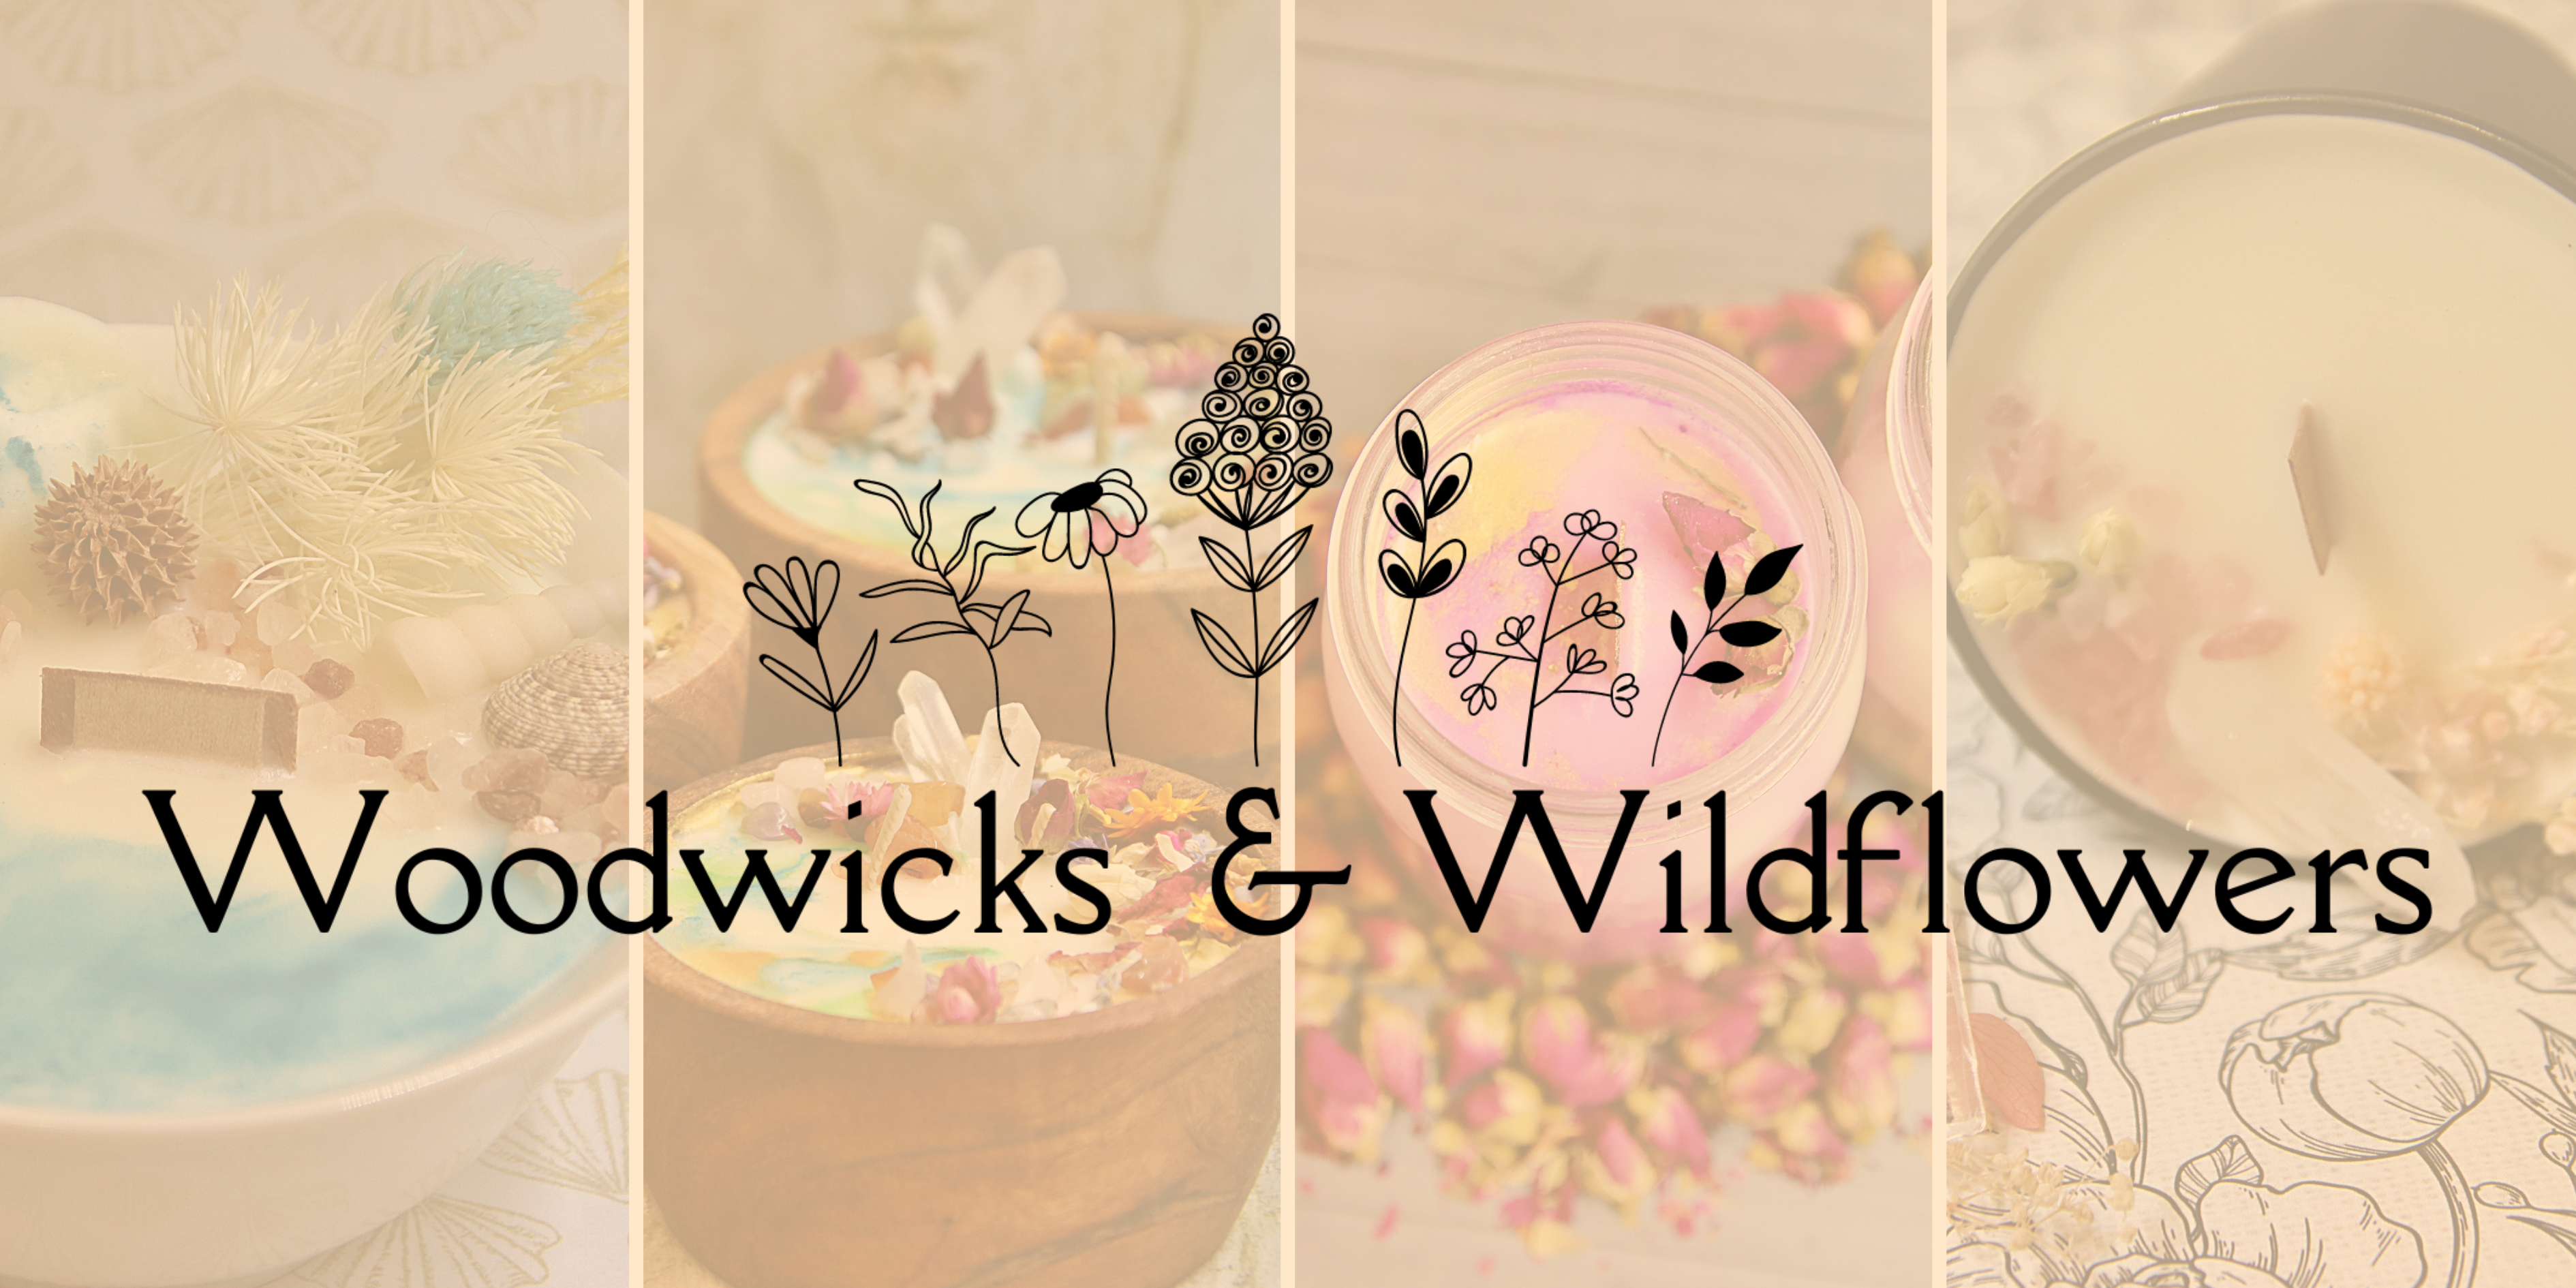 Woodwicks & Wildflowers